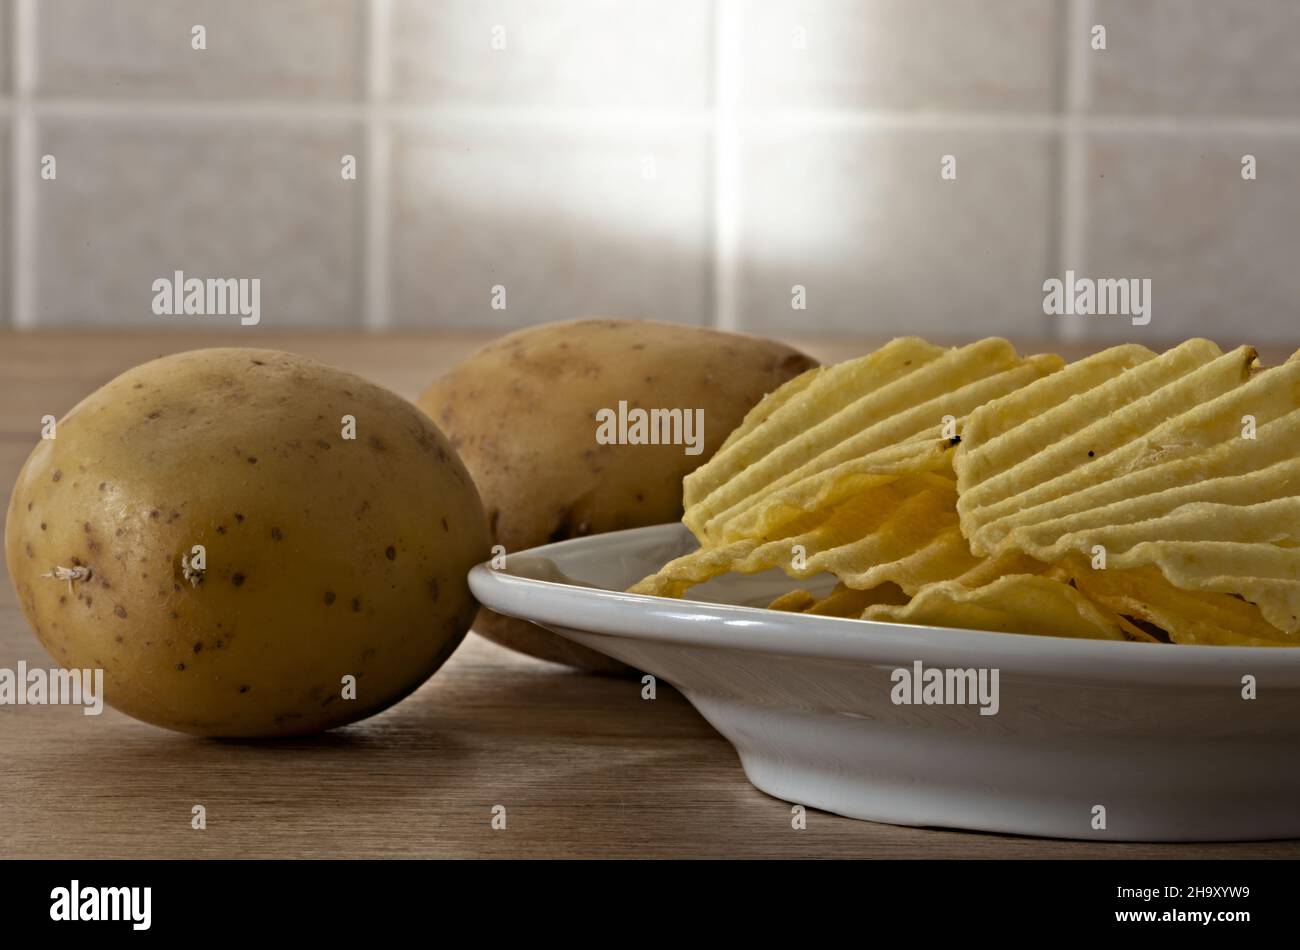 patate - patate frate nel piatto primo piano con patate fresche Banque D'Images